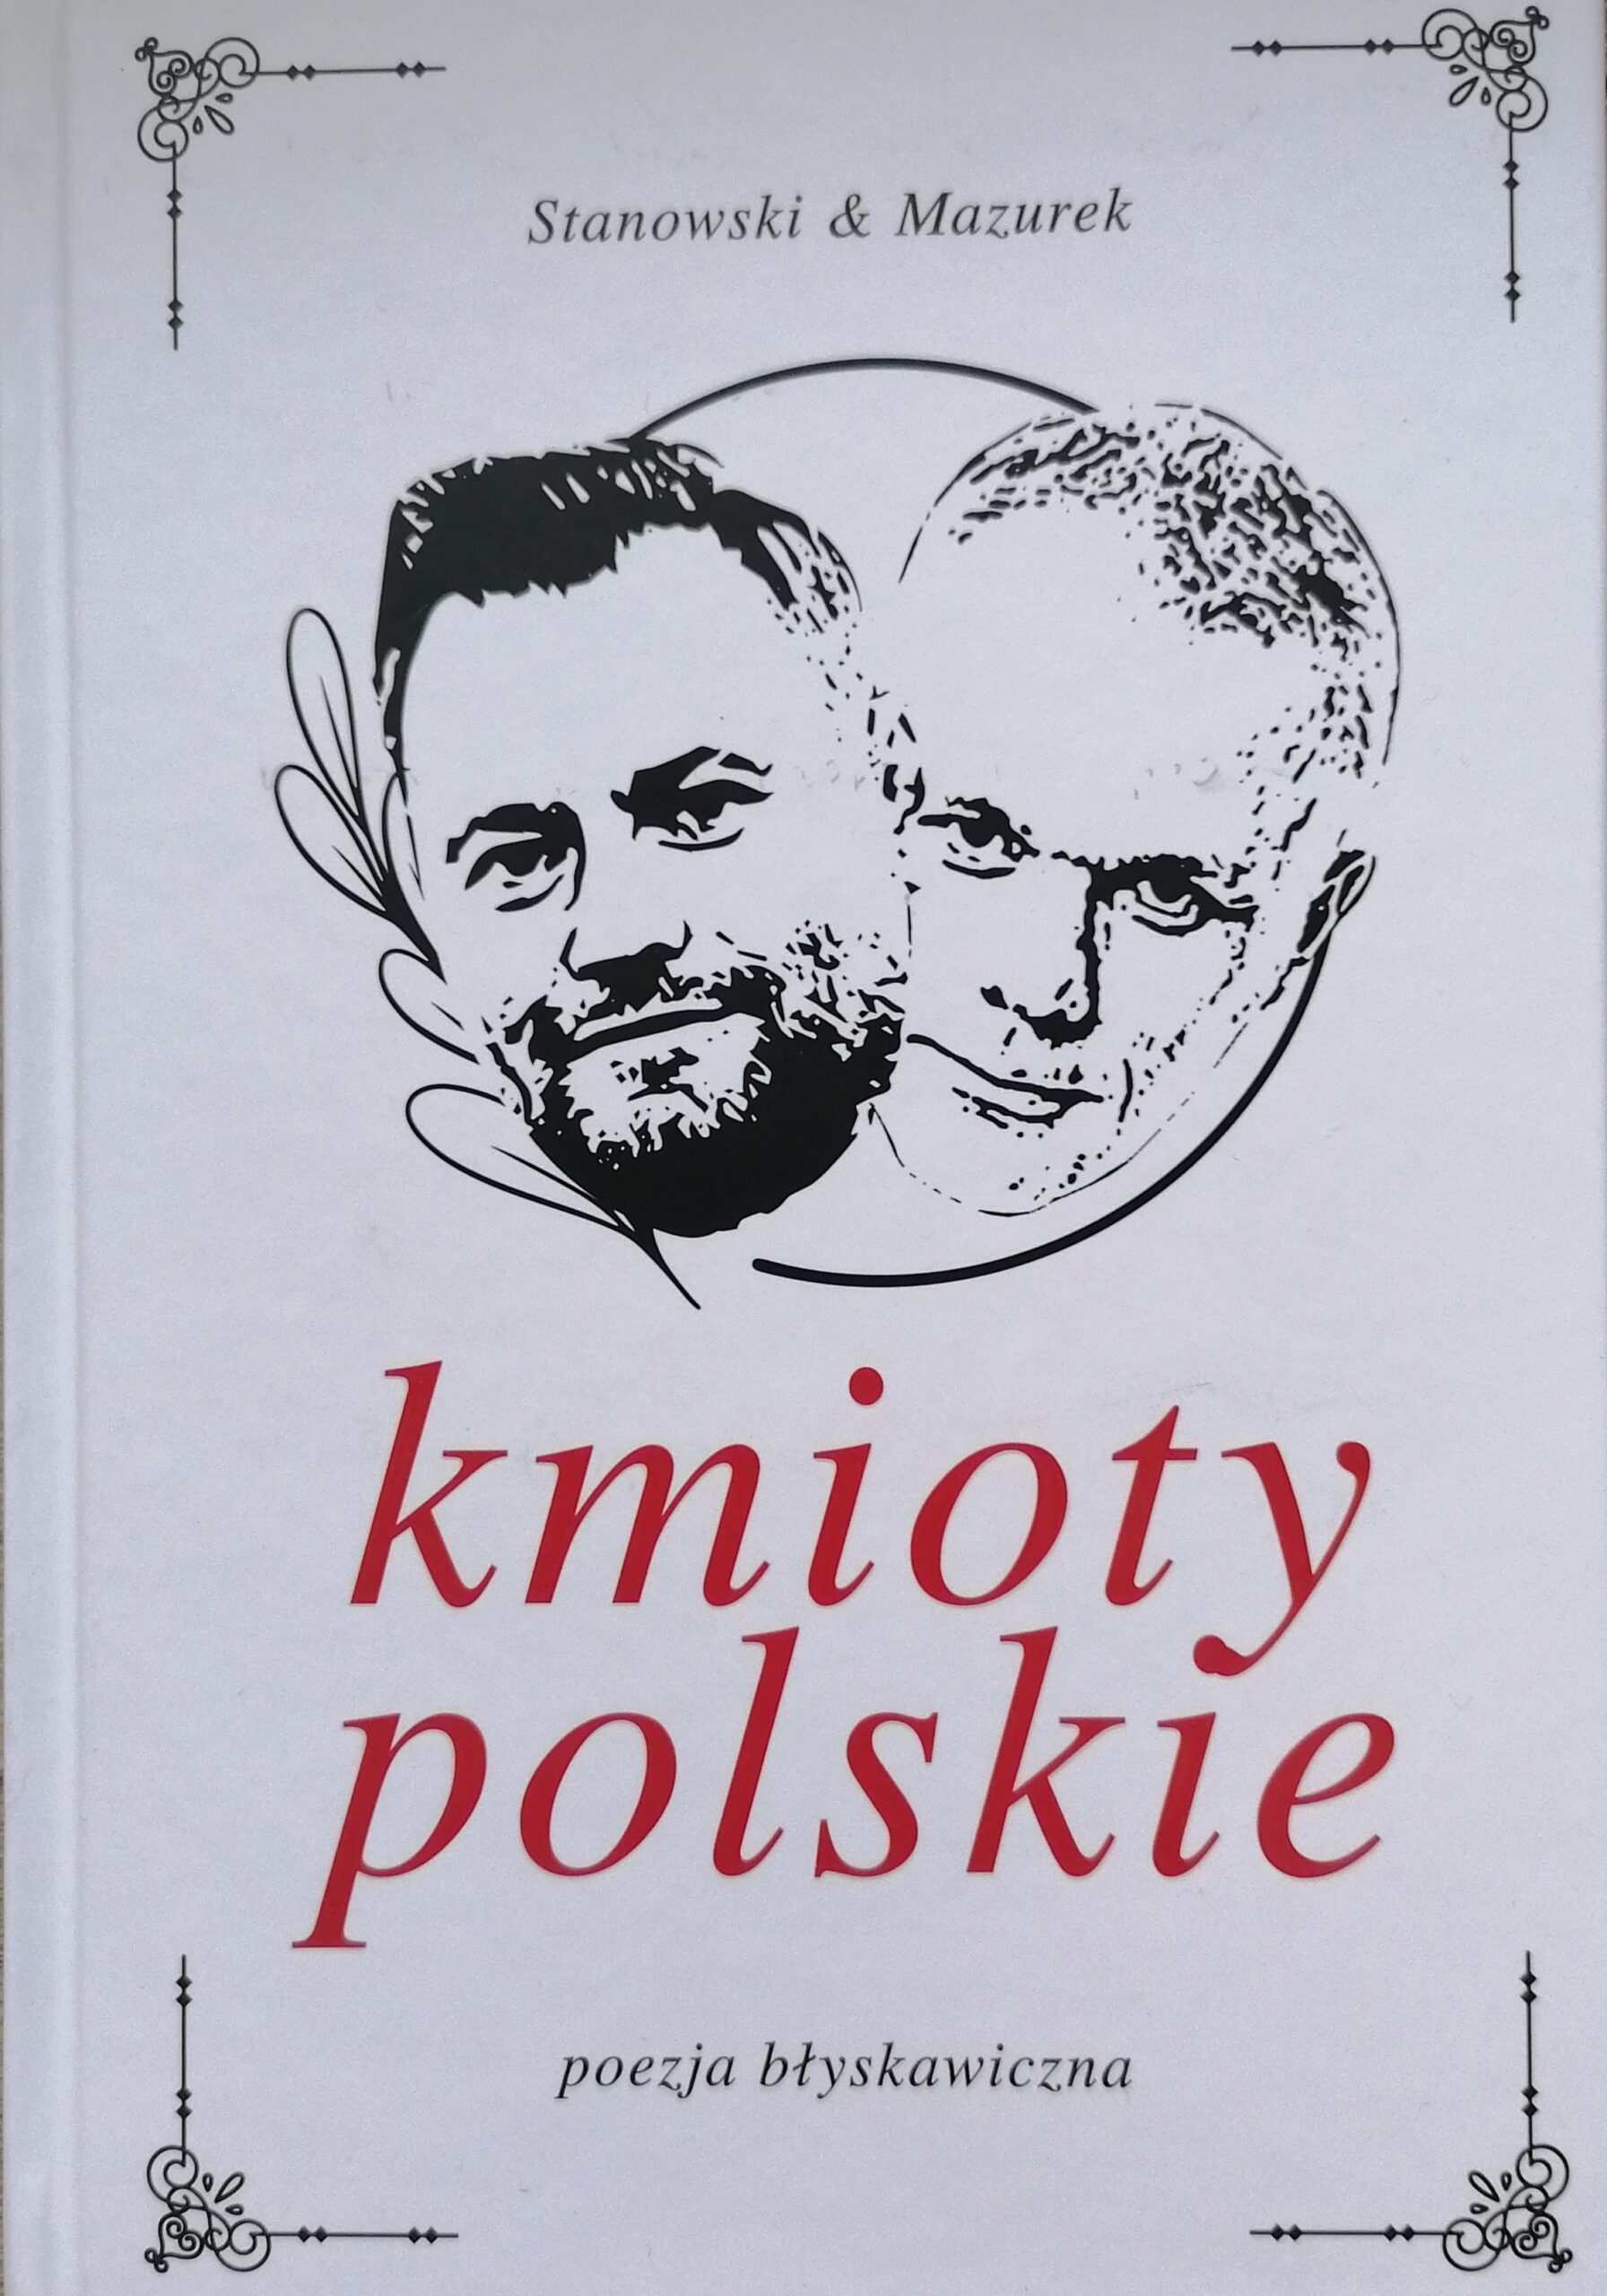 Kmioty polskie – poetycki hit czy kit? (recenzja z jajem)